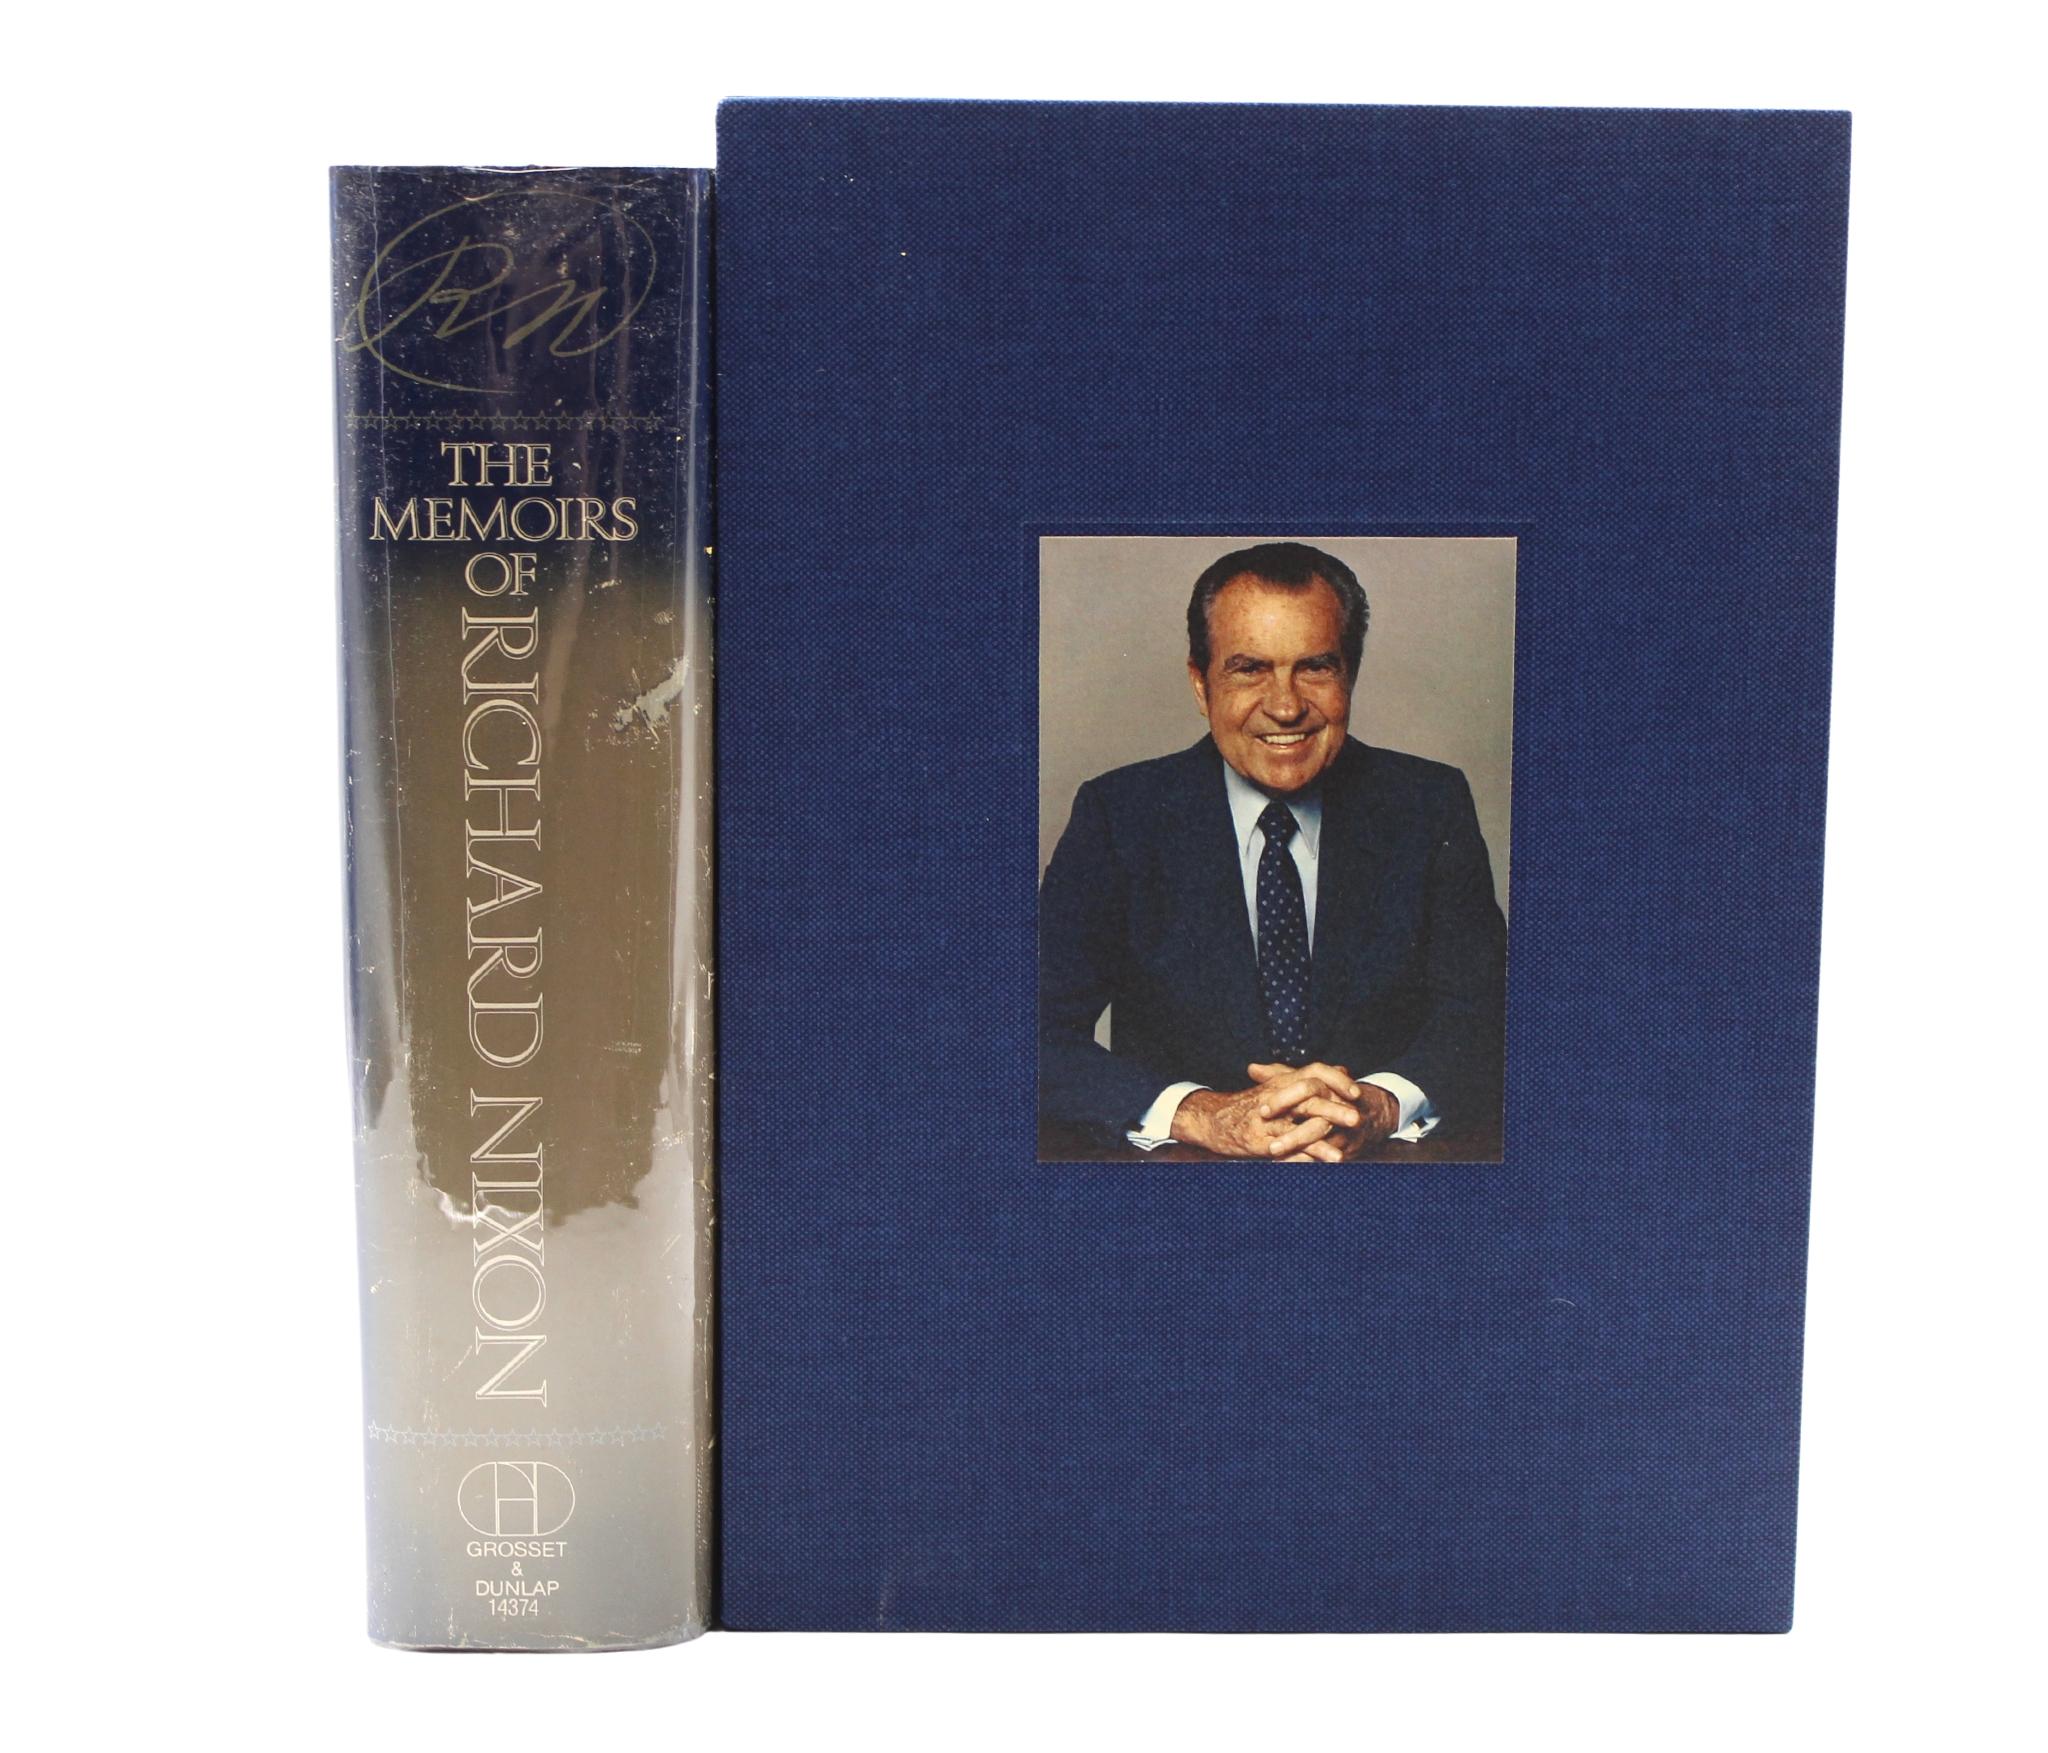 Nixon, Richard. Les mémoires de Richard Nixon. New York : Grosset & Dunlap, 1978. Première édition. Signé et inscrit sur un ex-libris collé. Dans sa jaquette et ses planches originales. Présenté dans un nouvel étui d'archivage. 

Il s'agit d'une